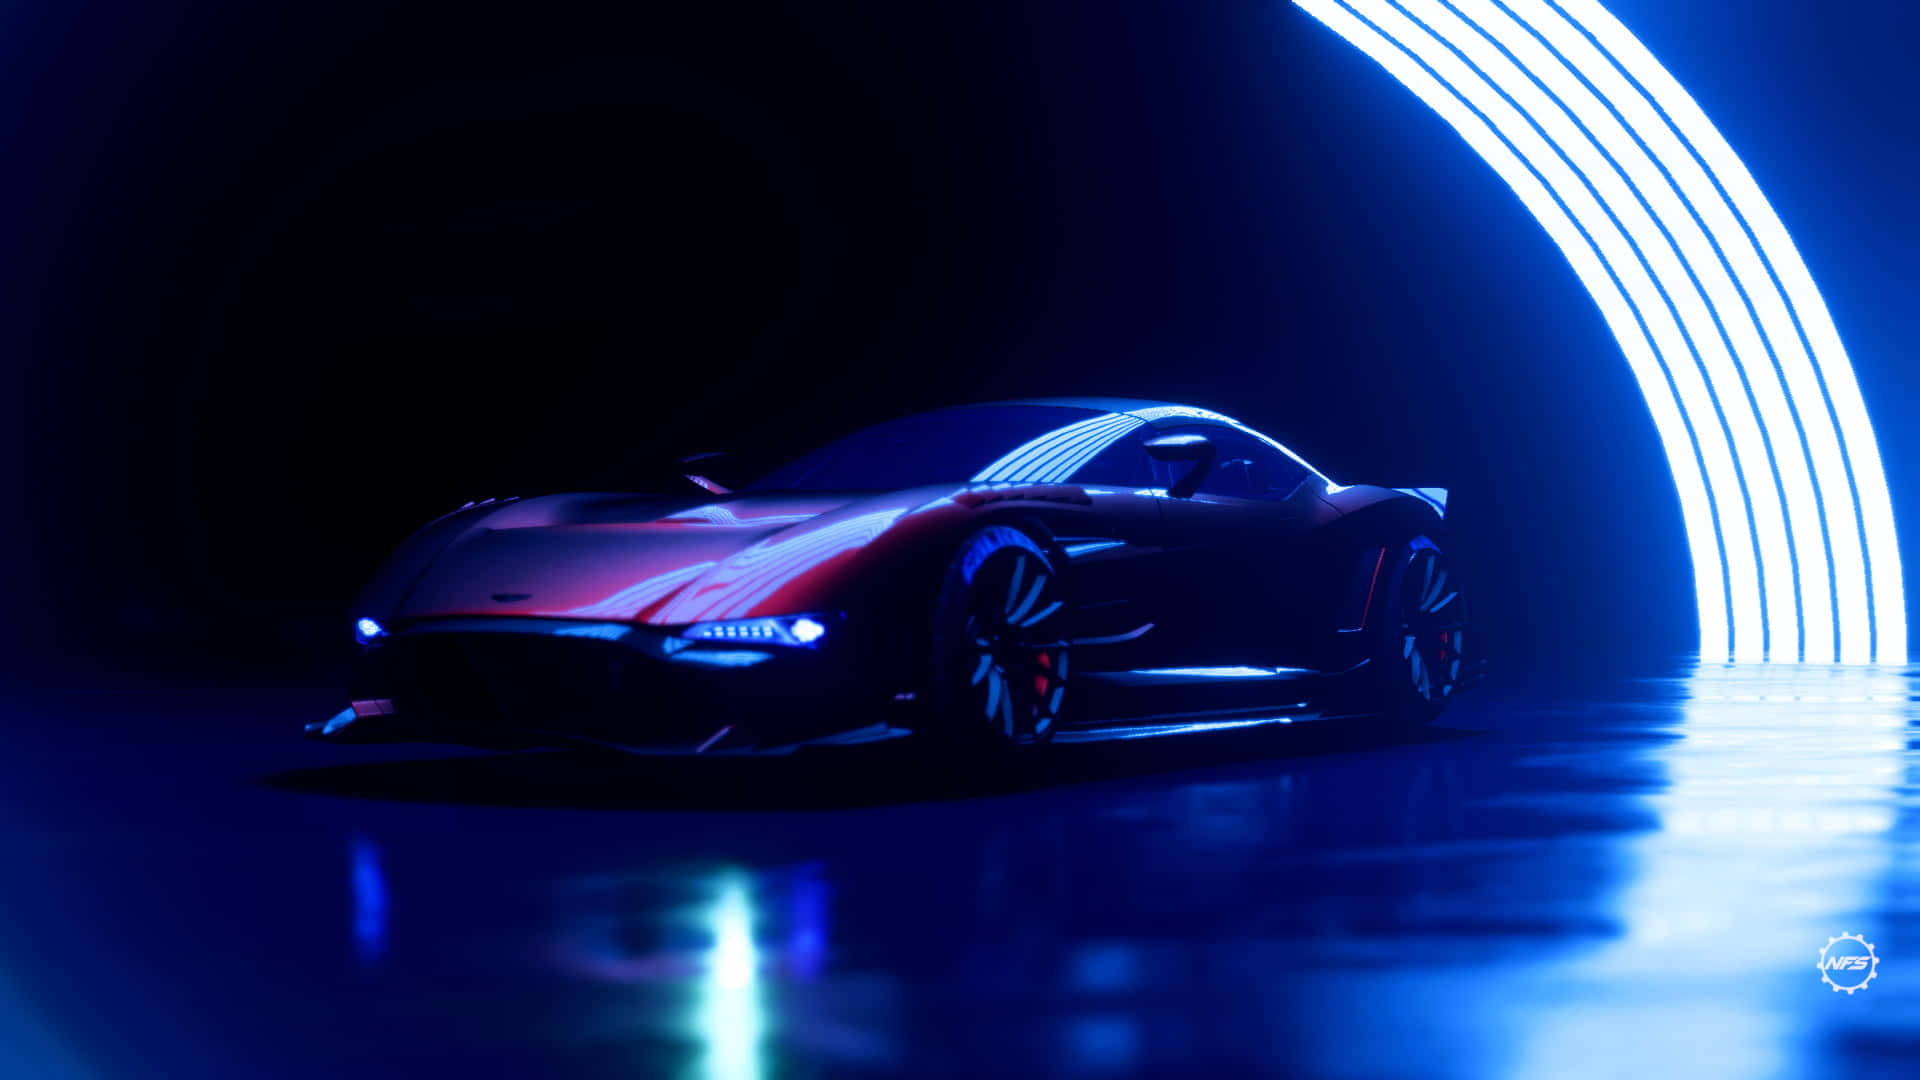 a futuristic car is shown in a dark tunnel